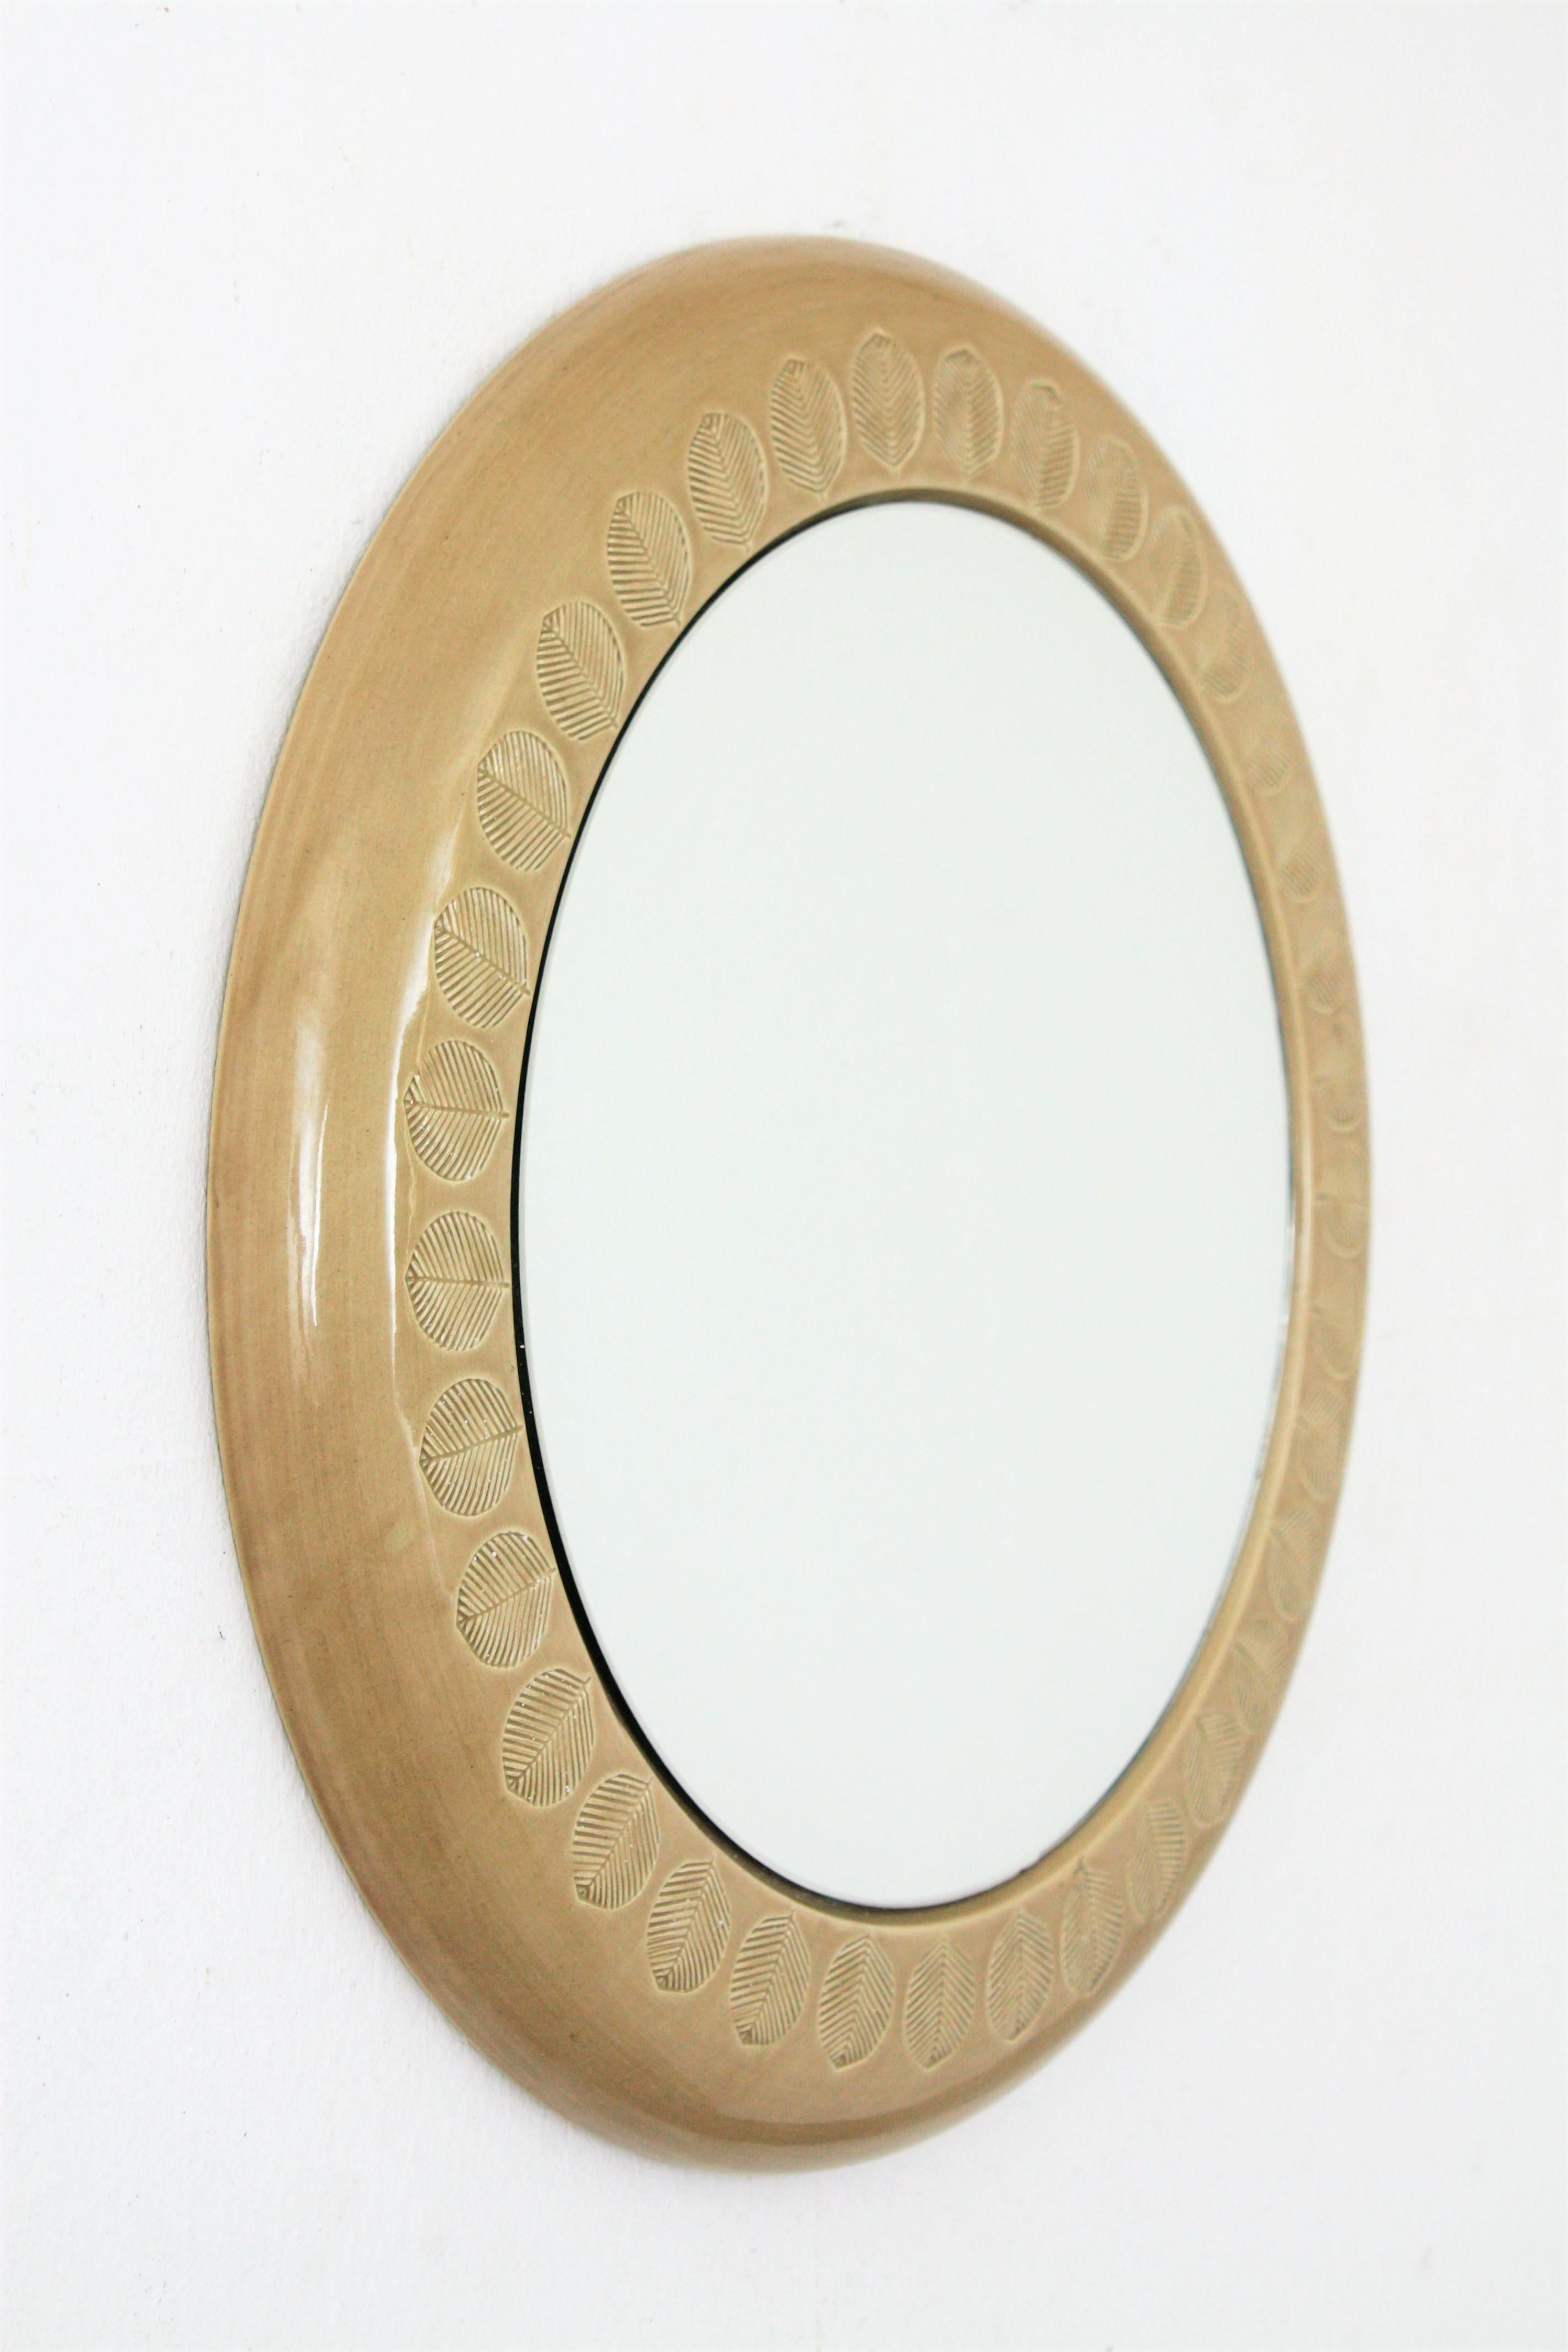 Italian Aldo Londi Bitossi Beige Glazed Ceramic Round Wall Mirror with Leaf Motifs For Sale